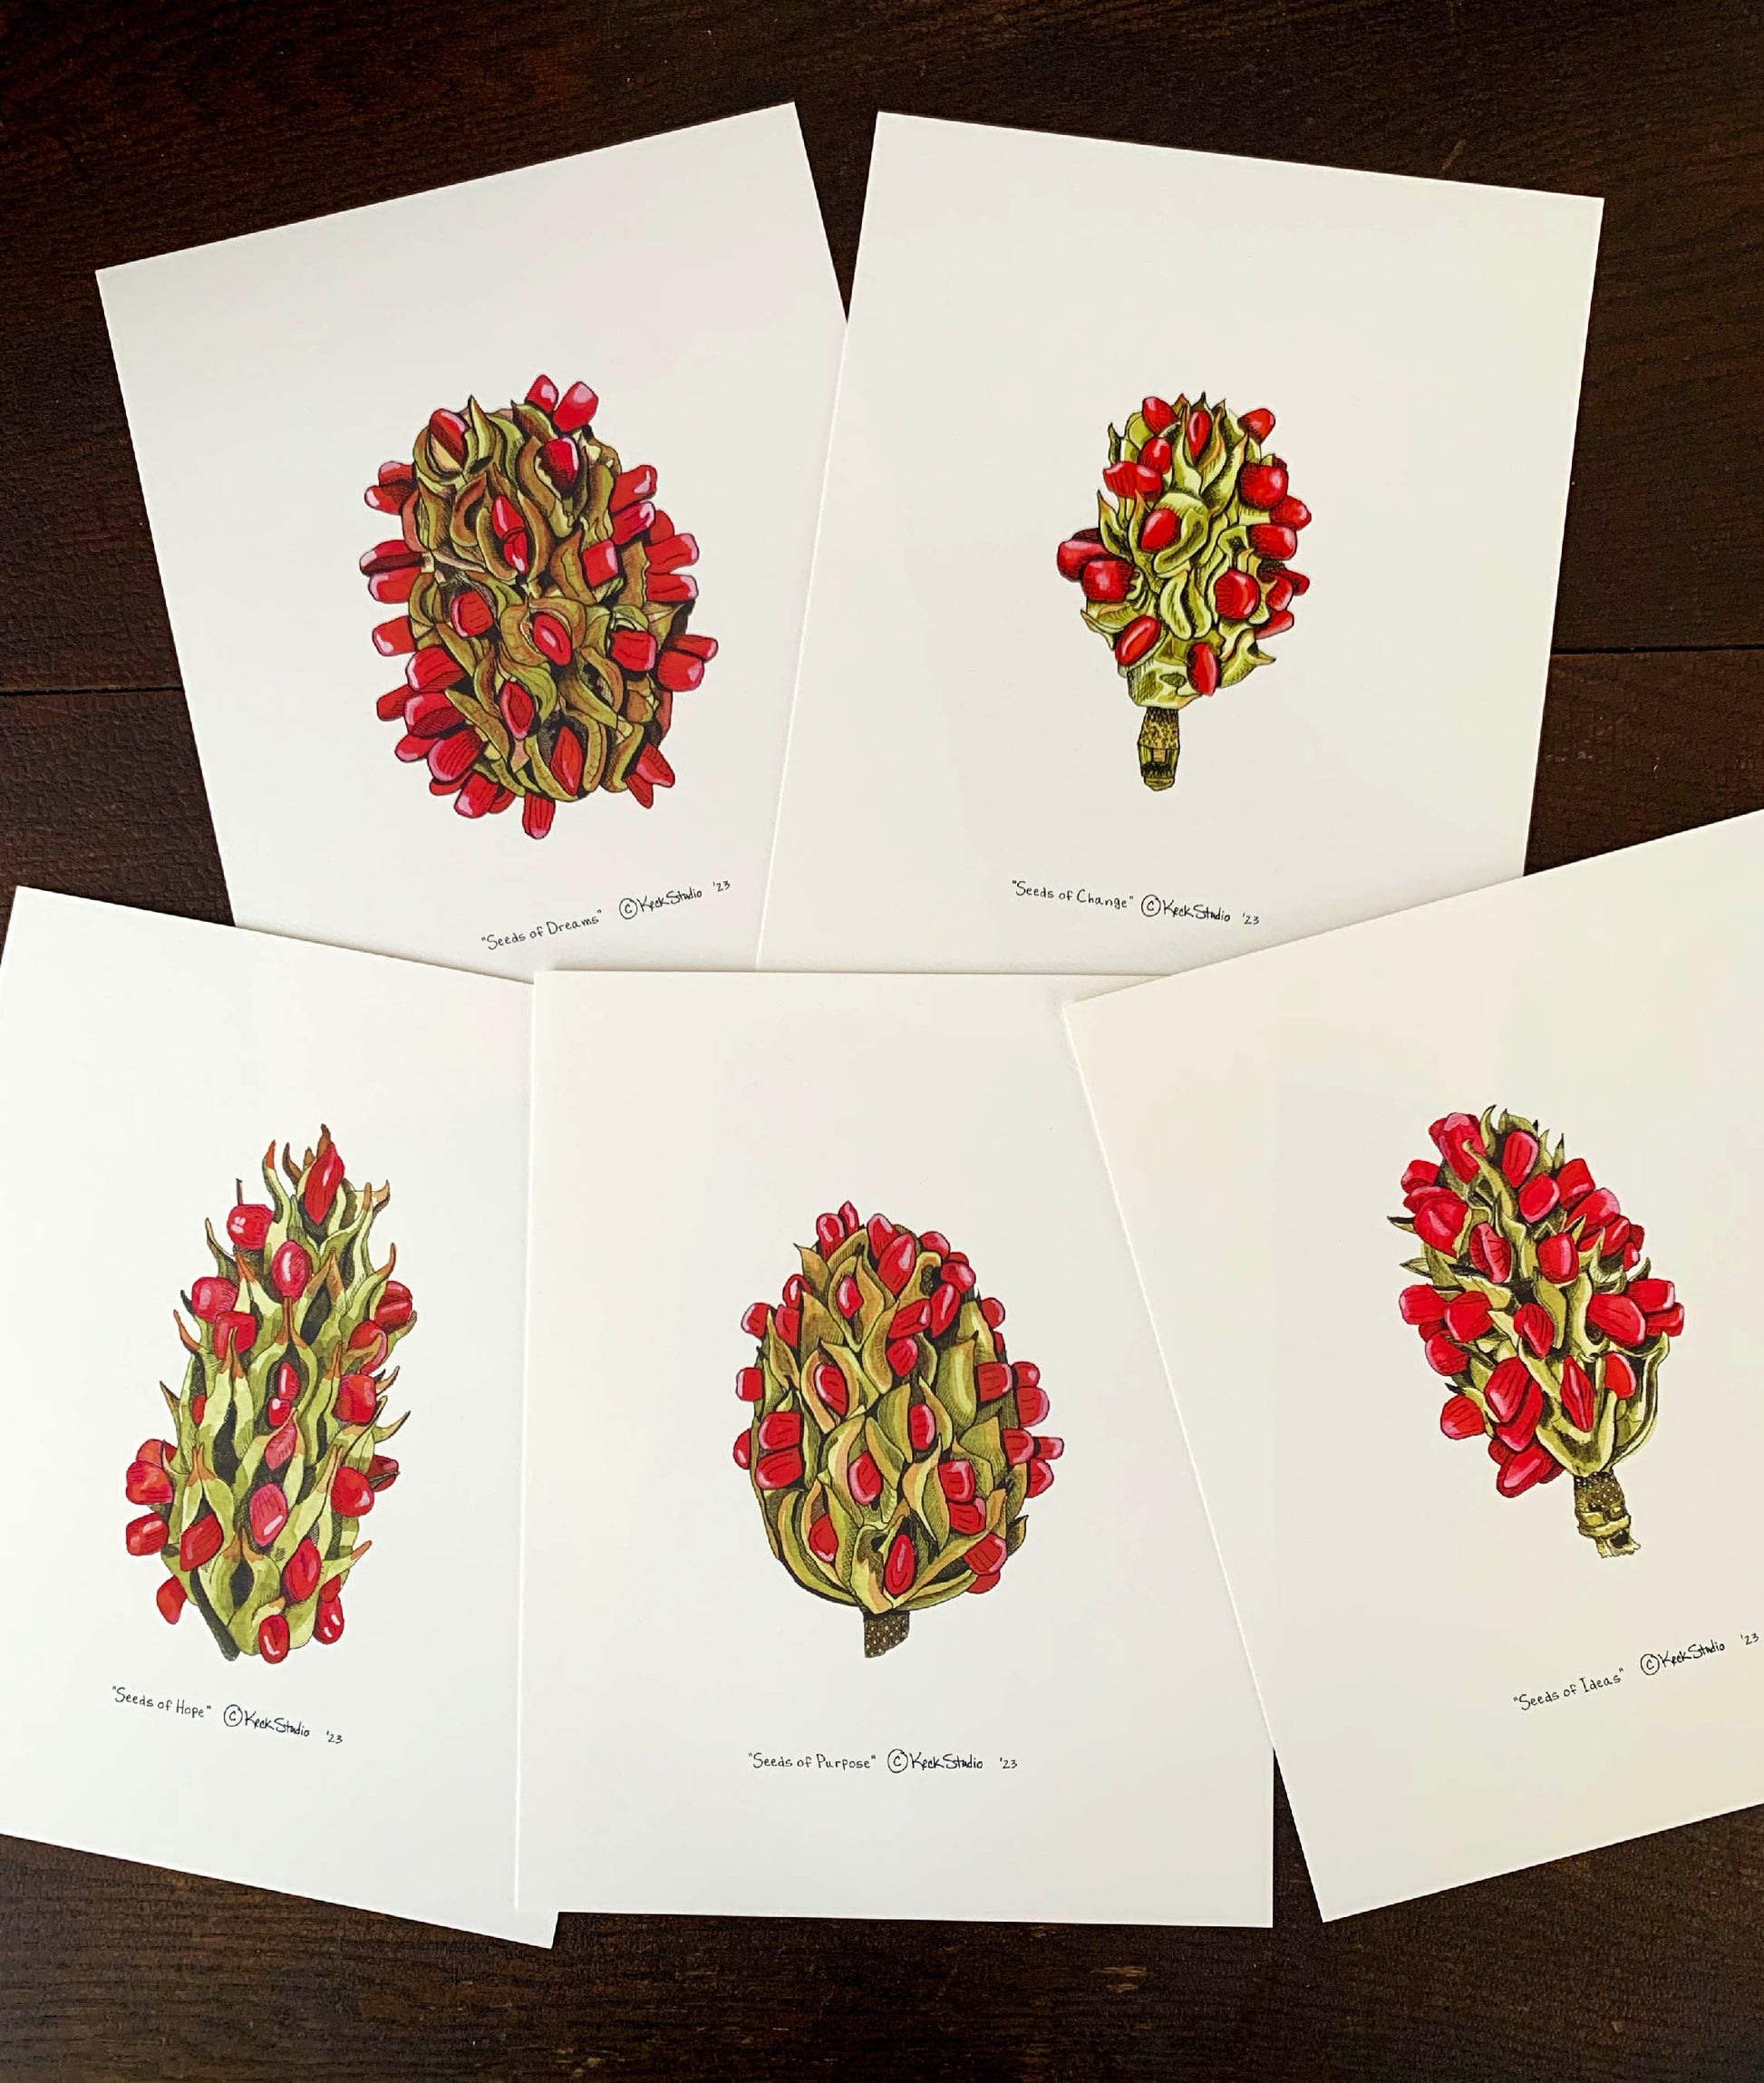 Manifestation Magnolia Seed Pod Series - ALL 5 prints